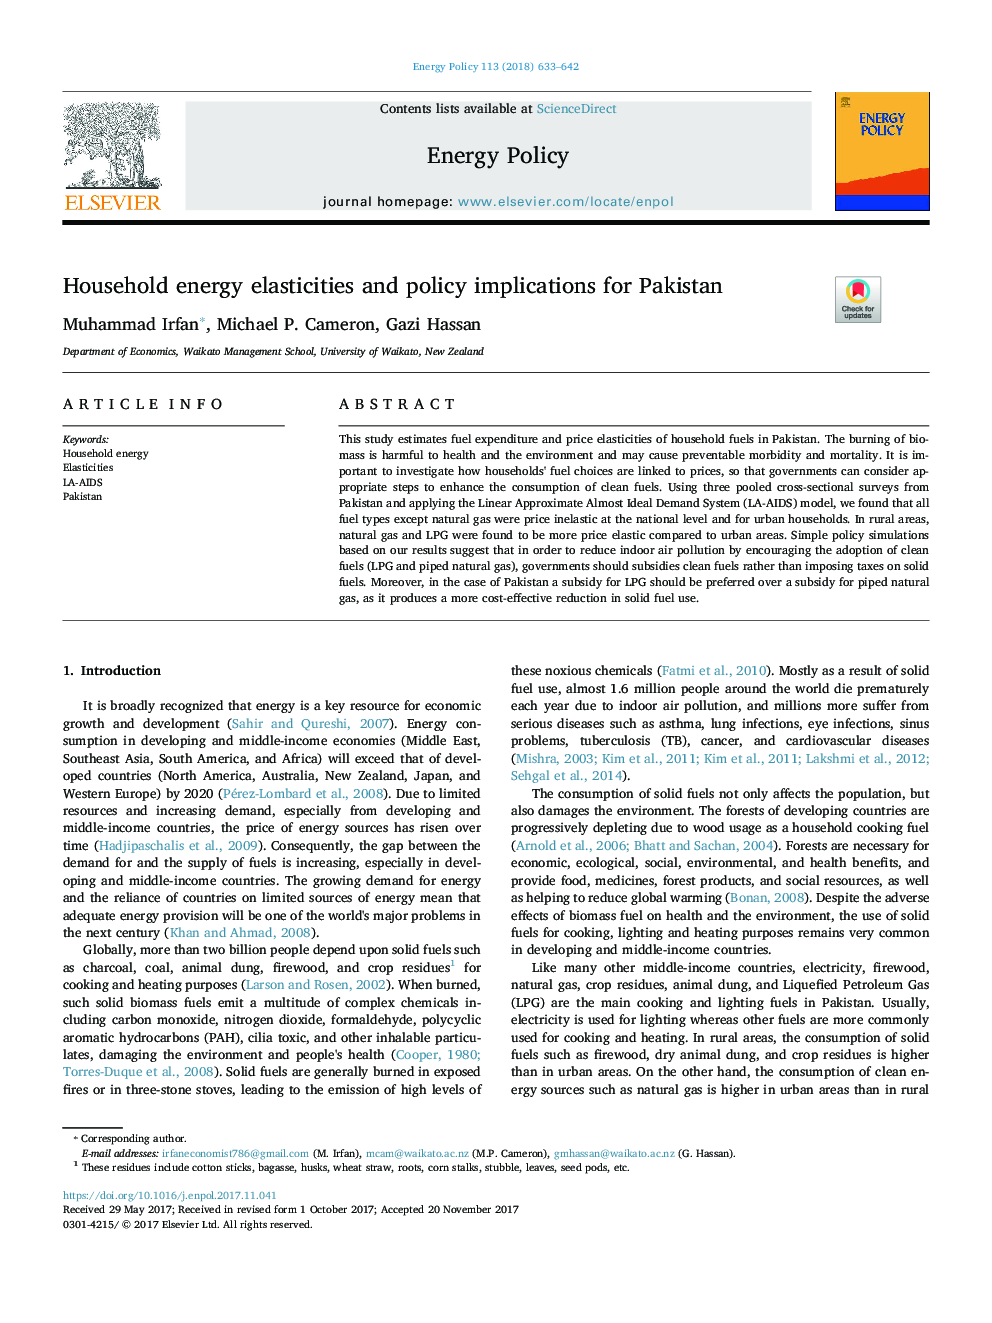 اشکالات انرژی خانوار و پیامدهای سیاست برای پاکستان 